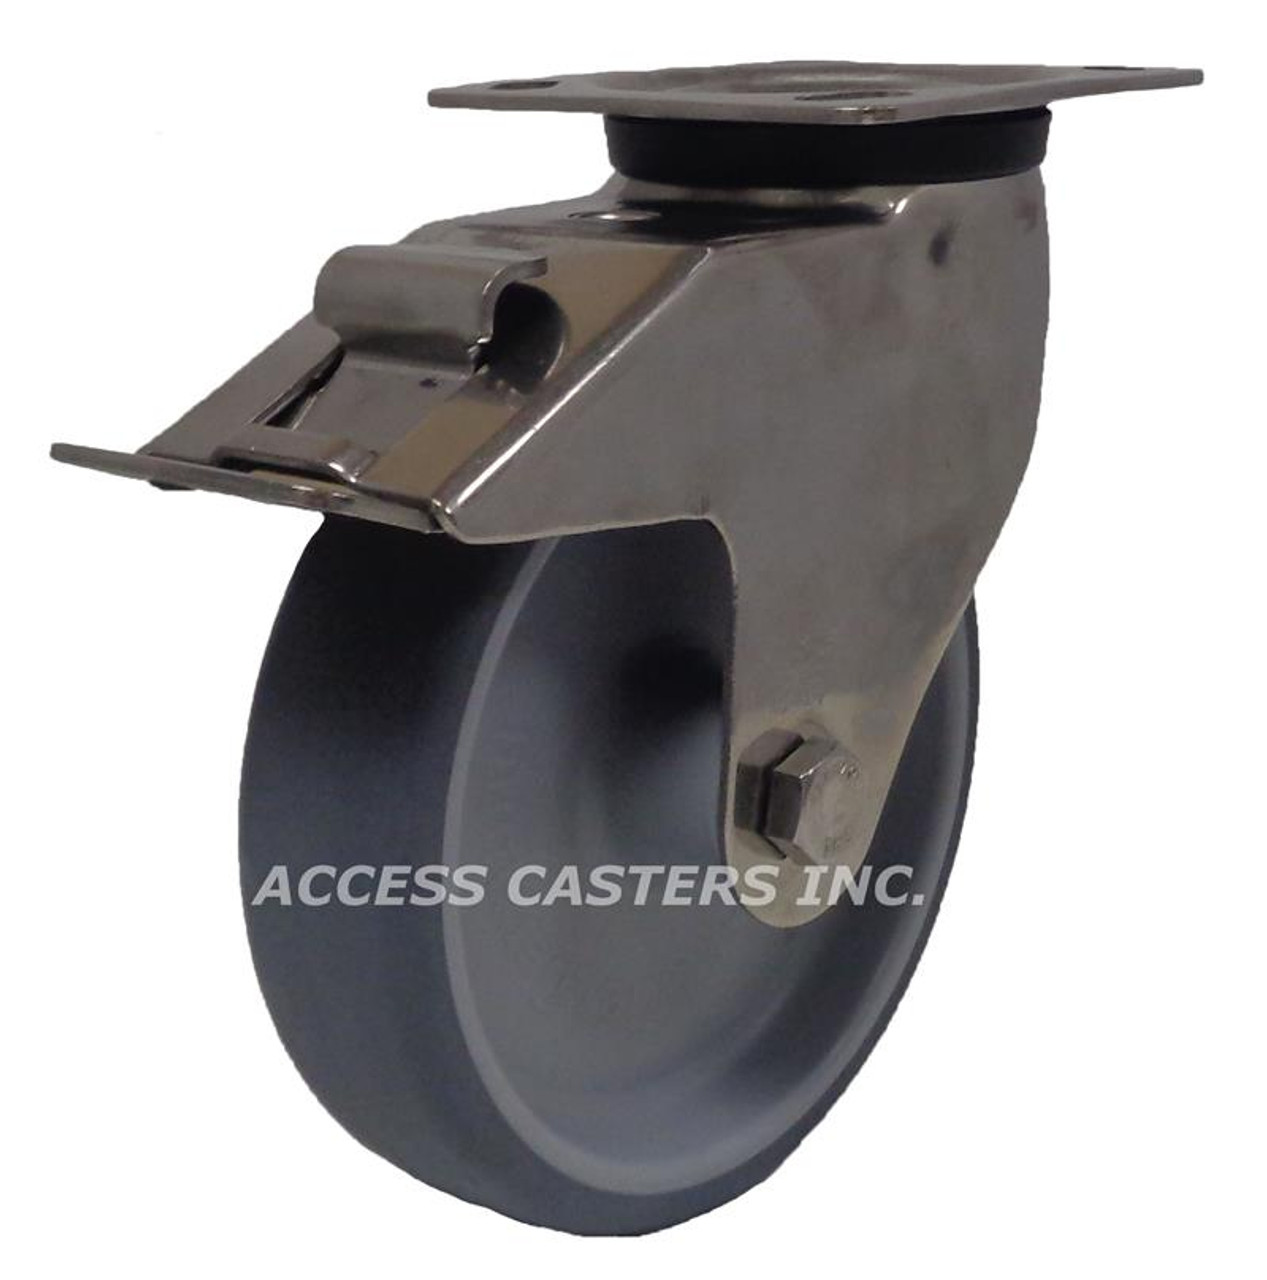 LEX-TPA 200G-14-FI Blickle 8" Stainless Steel Swivel TPE Wheel Plate Caster